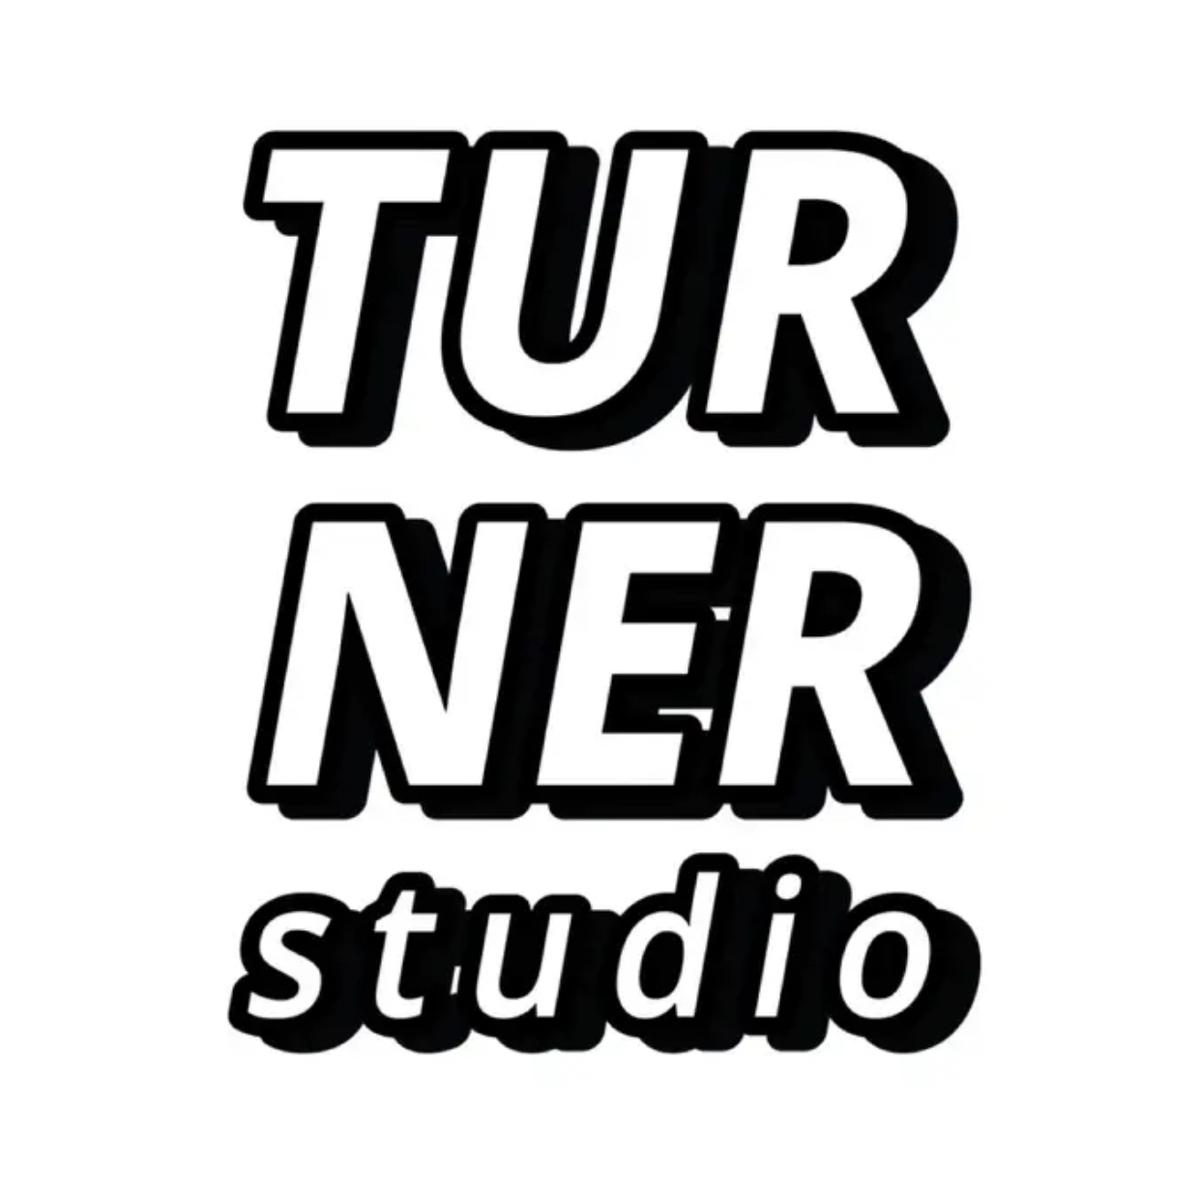 รูปภาพของ Turner studio